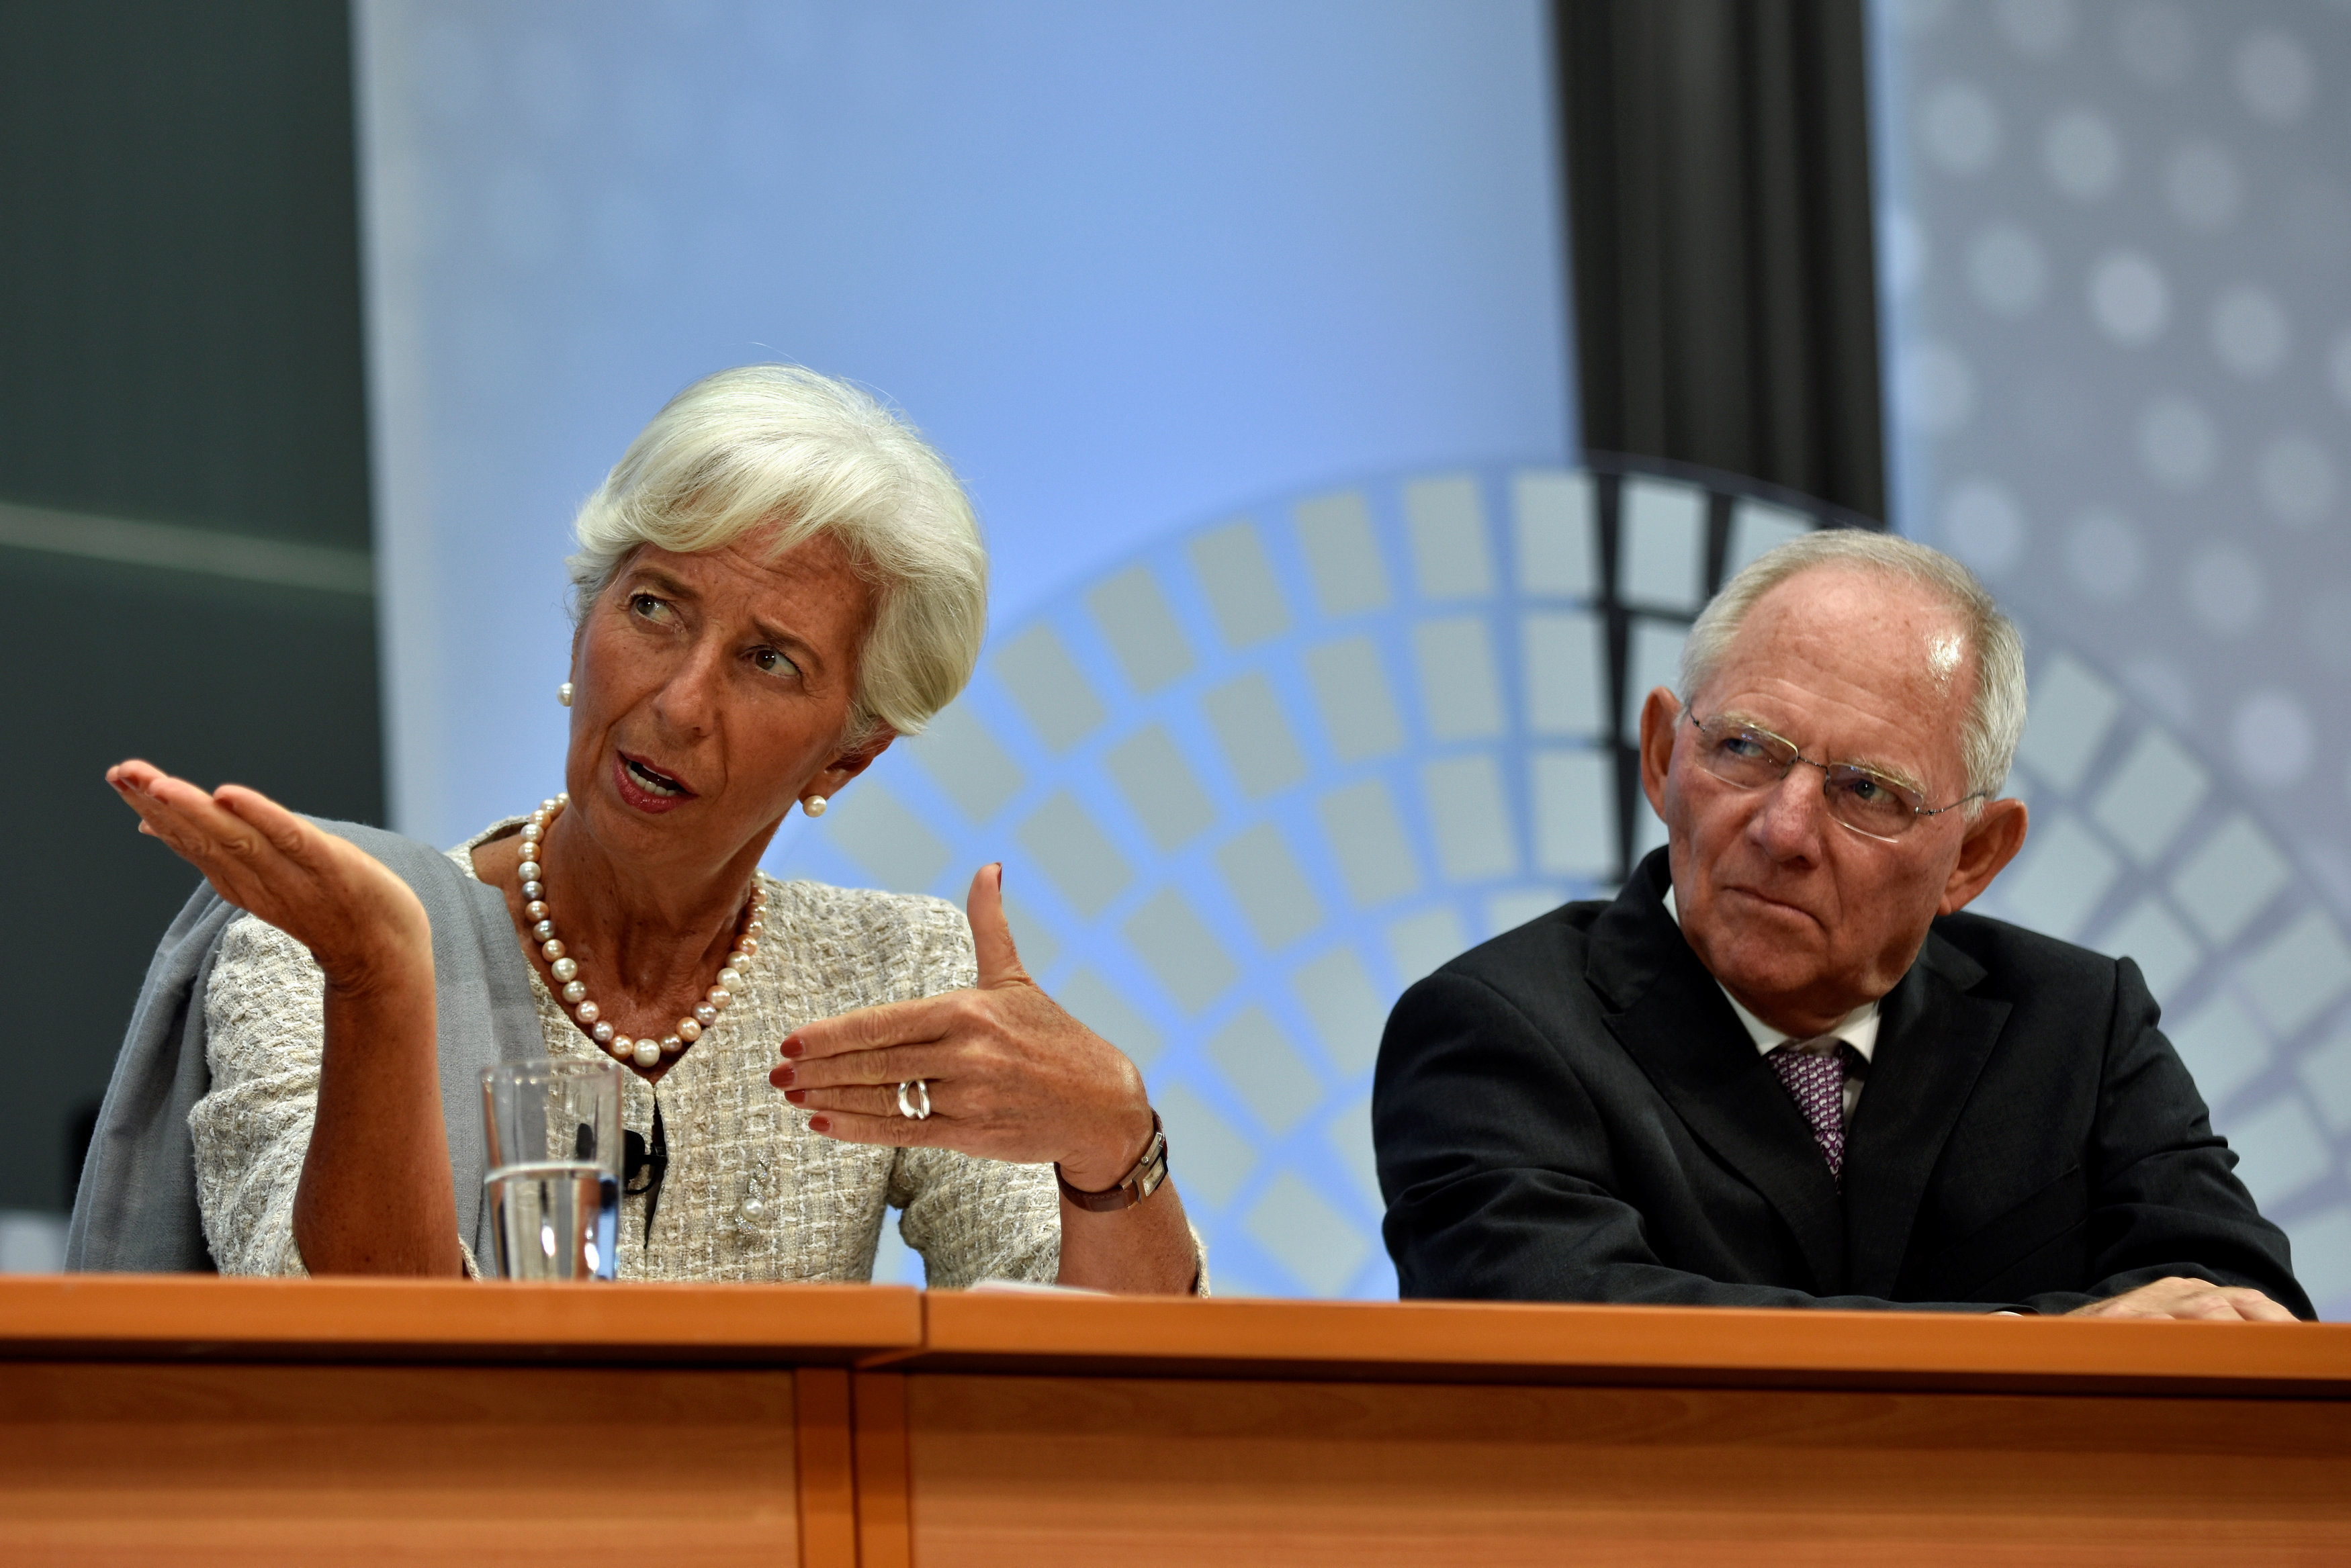 Λαγκάρντ διαβεβαιώνει Σόιμπλε πως το ΔΝΤ συνεχίζει στην Ελλάδα